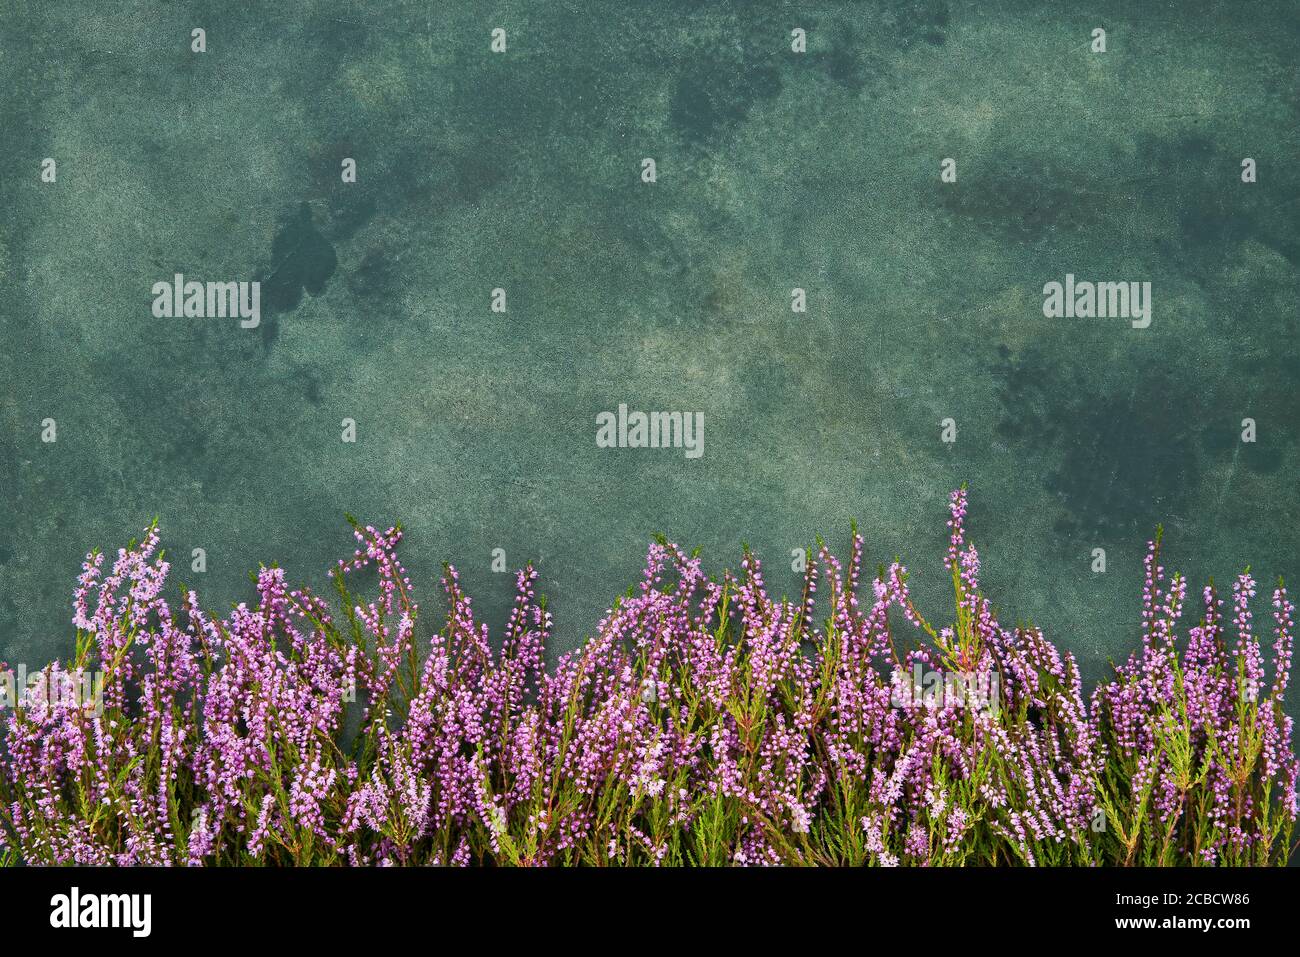 Pink Common Heather Blumen auf einem grünen Hintergrund. Platz für Text kopieren, Draufsicht. Flach liegend, selektiver Fokus Stockfoto